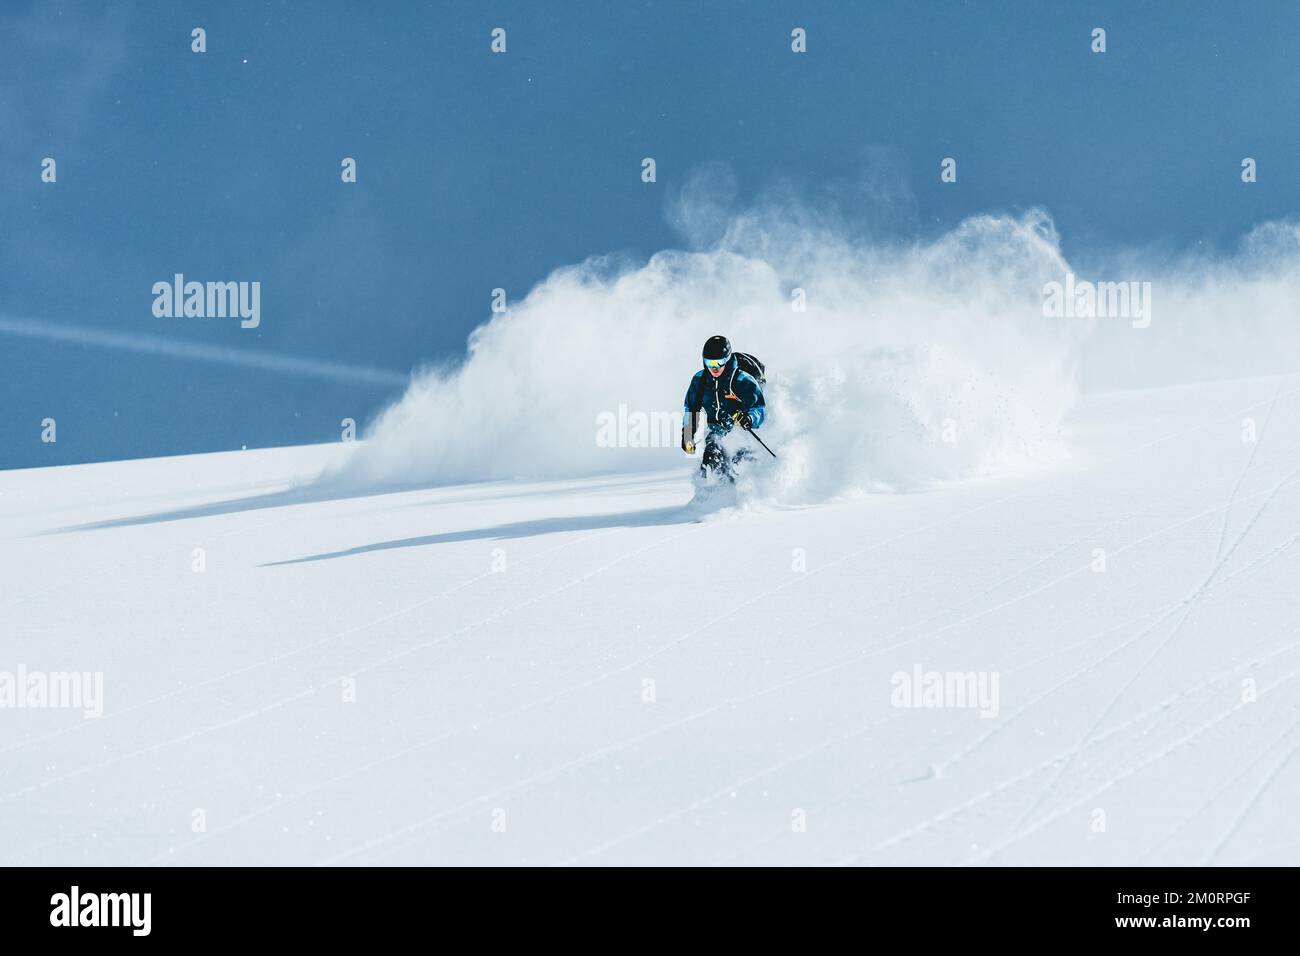 Man skiing in deep powder snow, Gastein, Salzburg, Austria Stock Photo